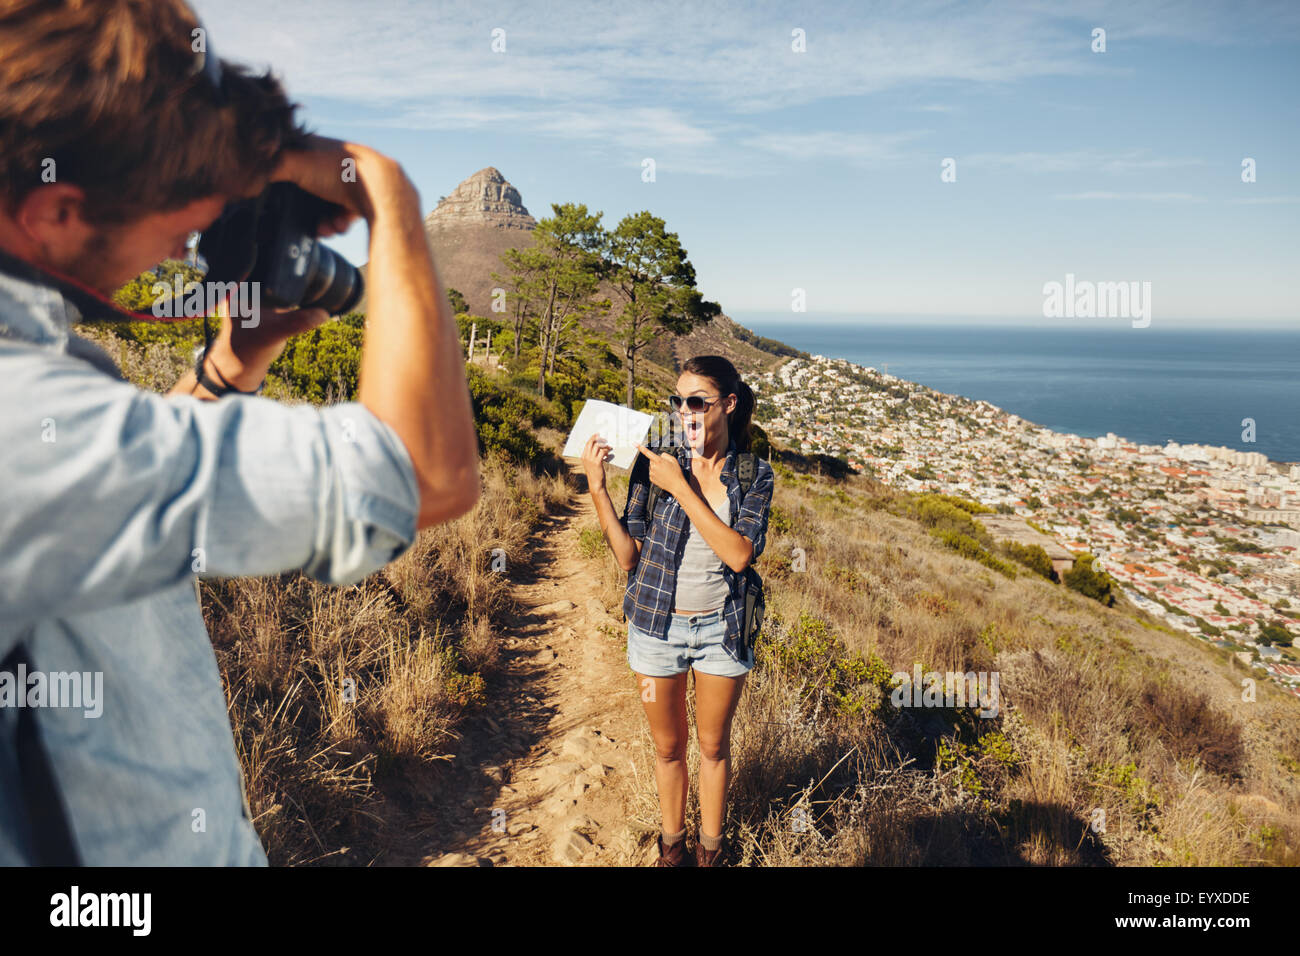 Excitée jeune femme montrant la carte et se faisant passer pour son petit ami en tenant ses images avec un appareil photo numérique. Jeune couple hiking on moun Banque D'Images